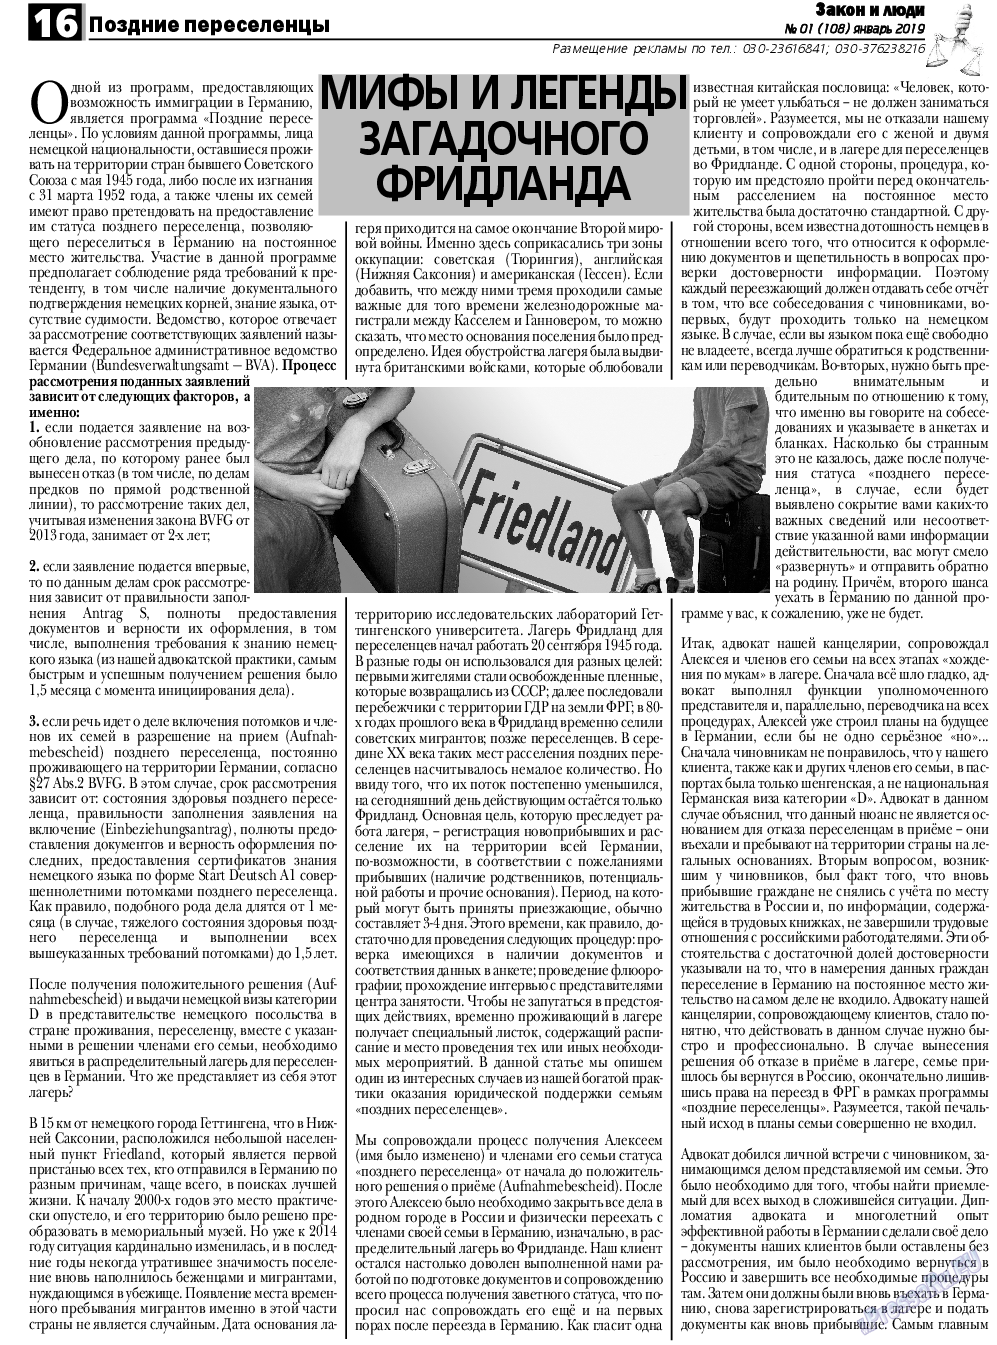 Закон и люди, газета. 2019 №1 стр.16